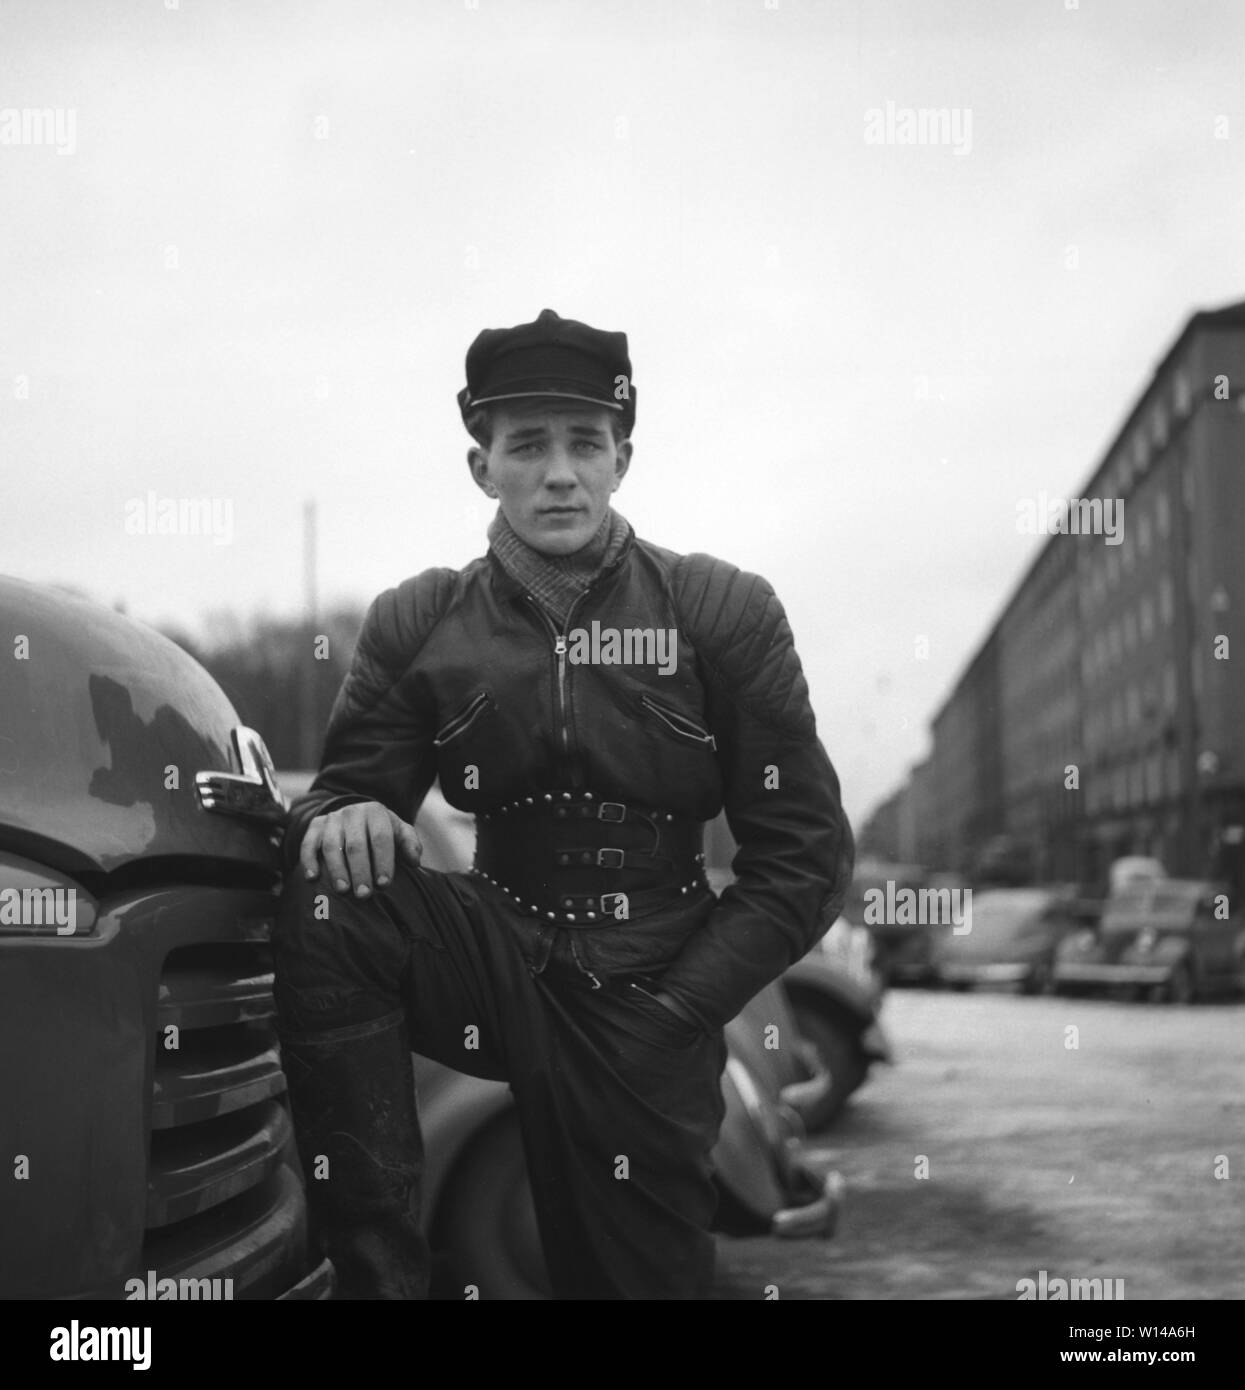 Motocycliste dans les années 1950. Un jeune homme vêtu de la façon typique les motards ont fait dans les années 1950. Tout en cuir. Bottes en cuir, pantalon et veste. A une ceinture et un chapeau typique motocycliste. La Suède Décembre 1954 Banque D'Images